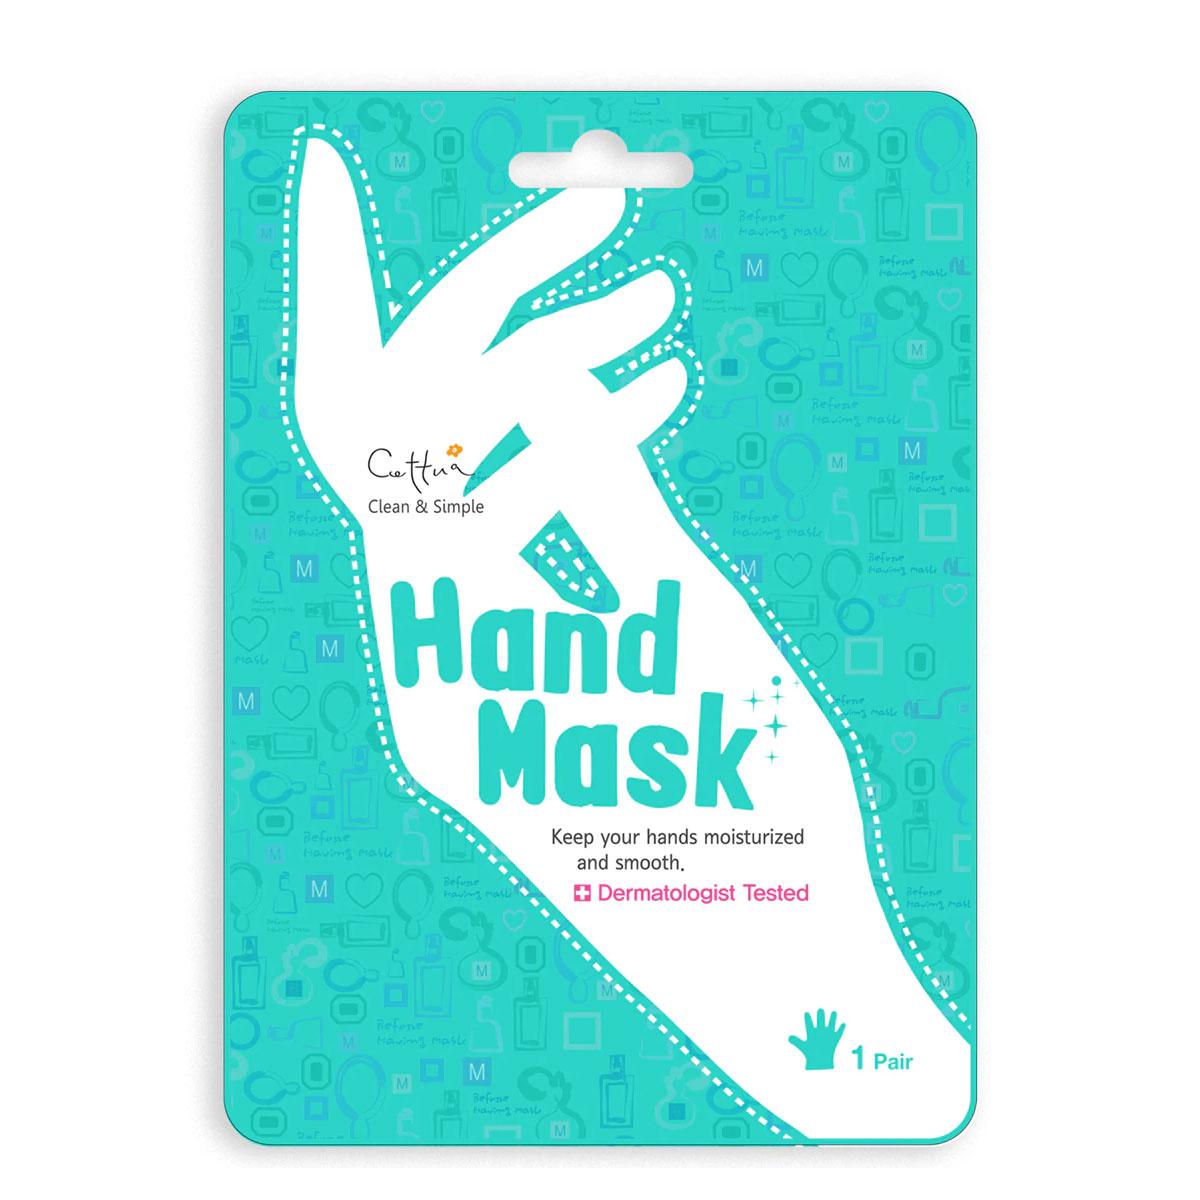 ماسک دست کره ای - hand mask